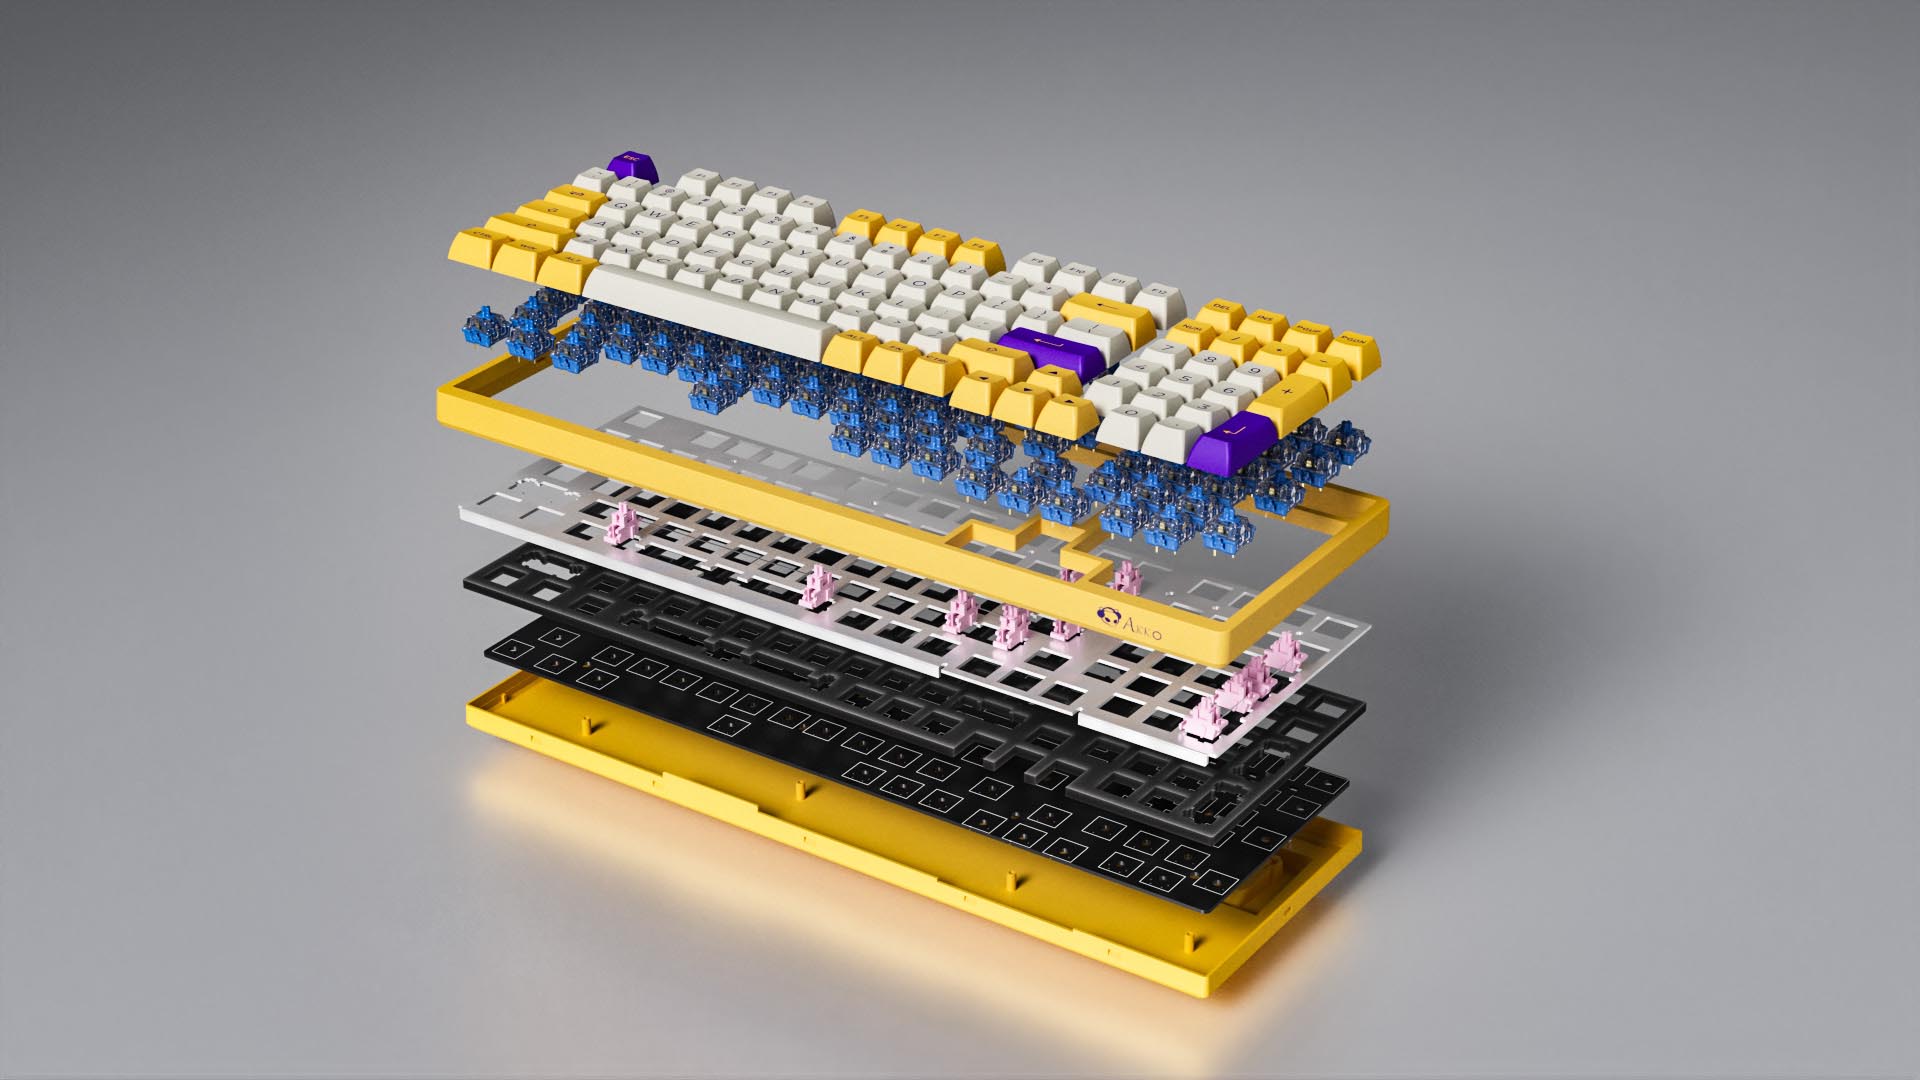 PCB mount là gì và có tác dụng gì trong bàn phím cơ?
